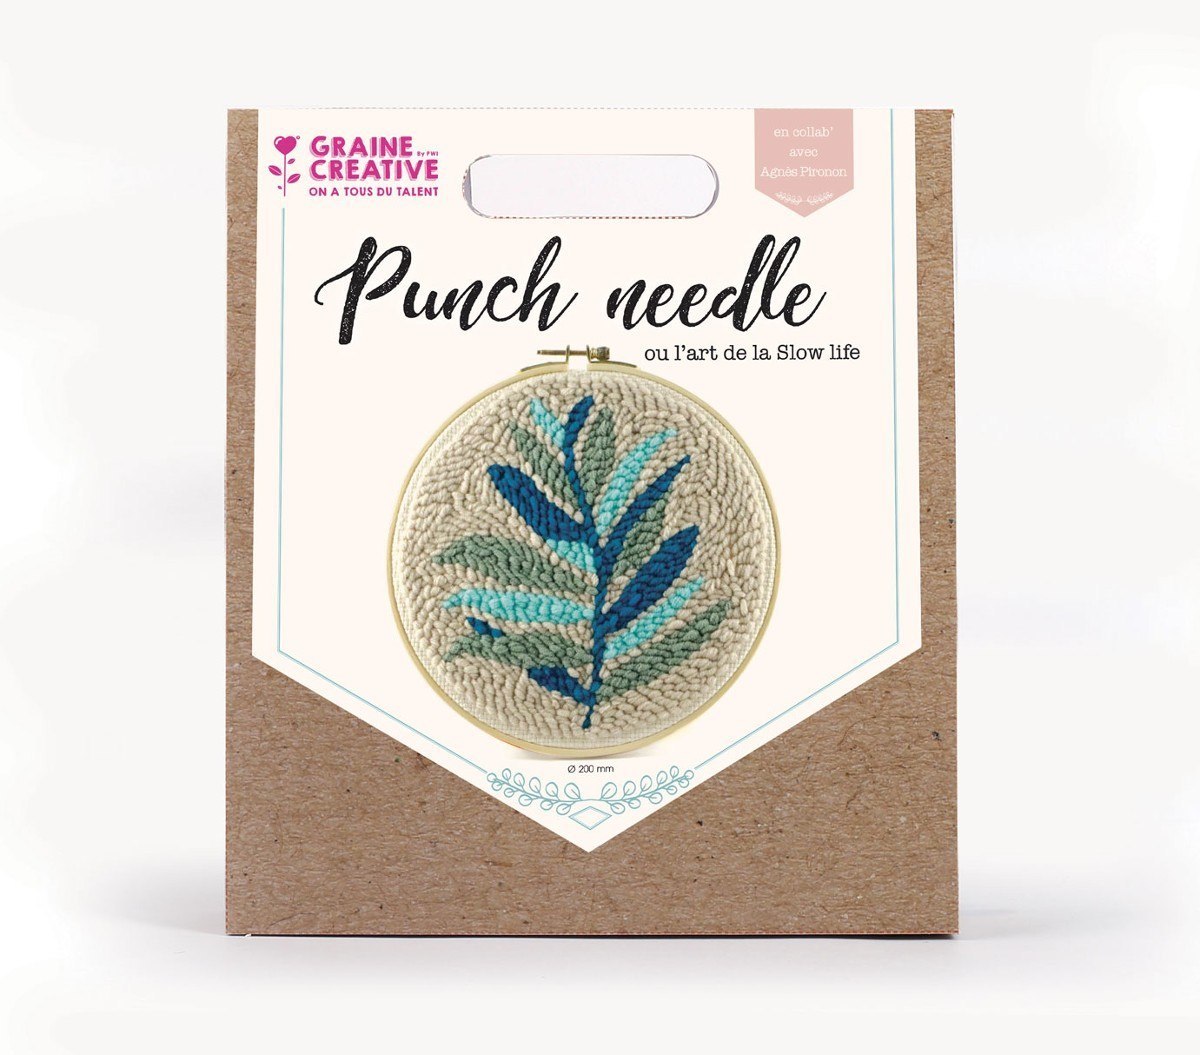 Instrukcja - jak pracować z zestawem Punch Needle